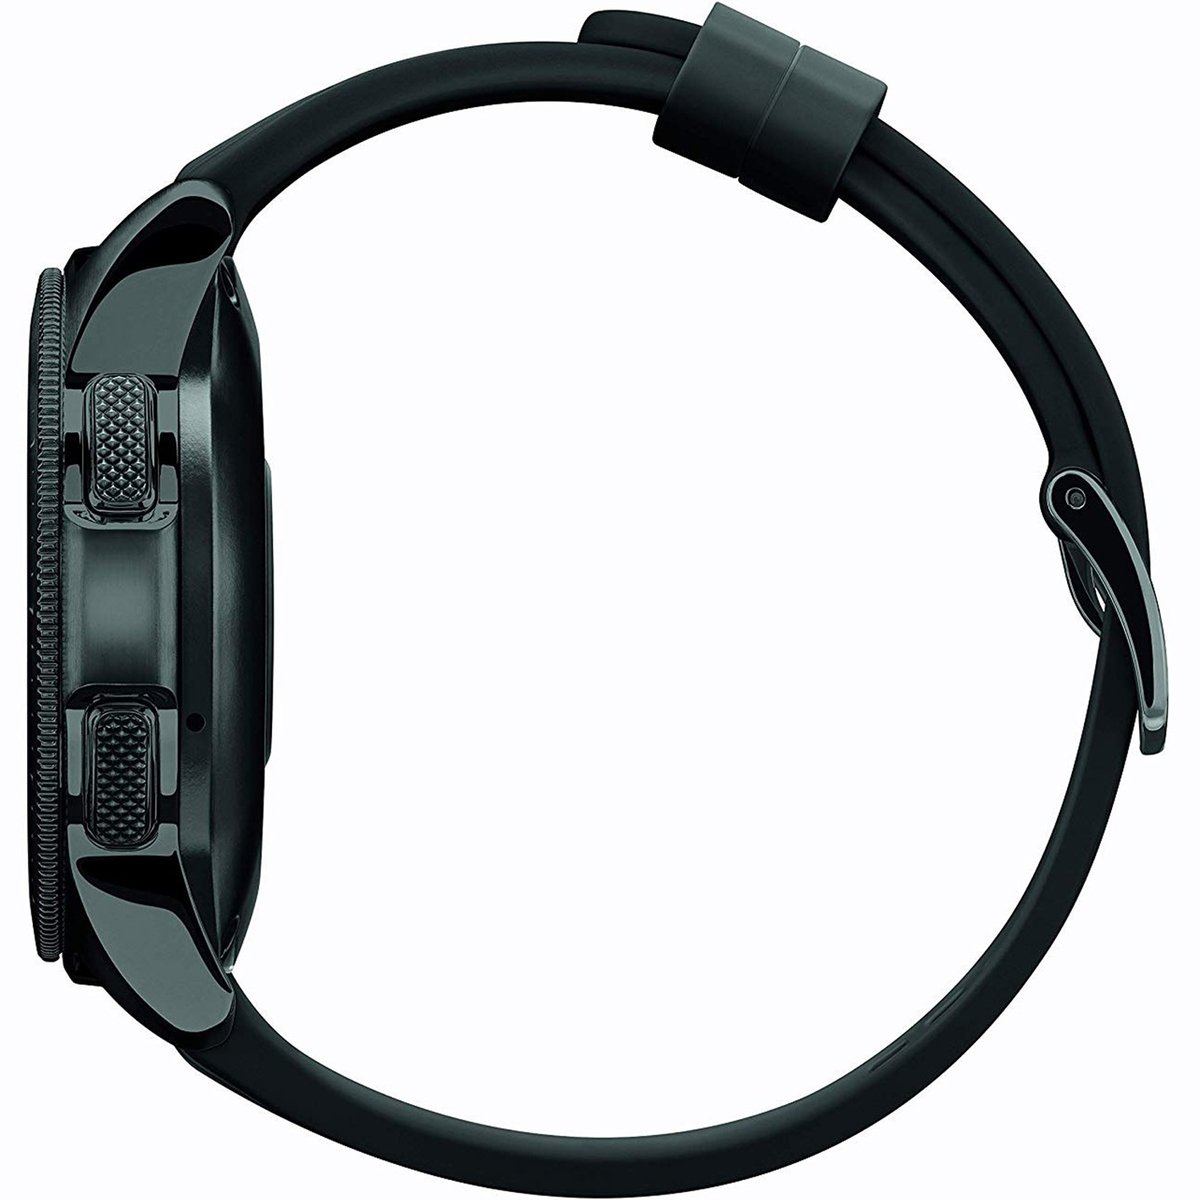 Samsung Galaxy Watch SM-R810 42mm Black